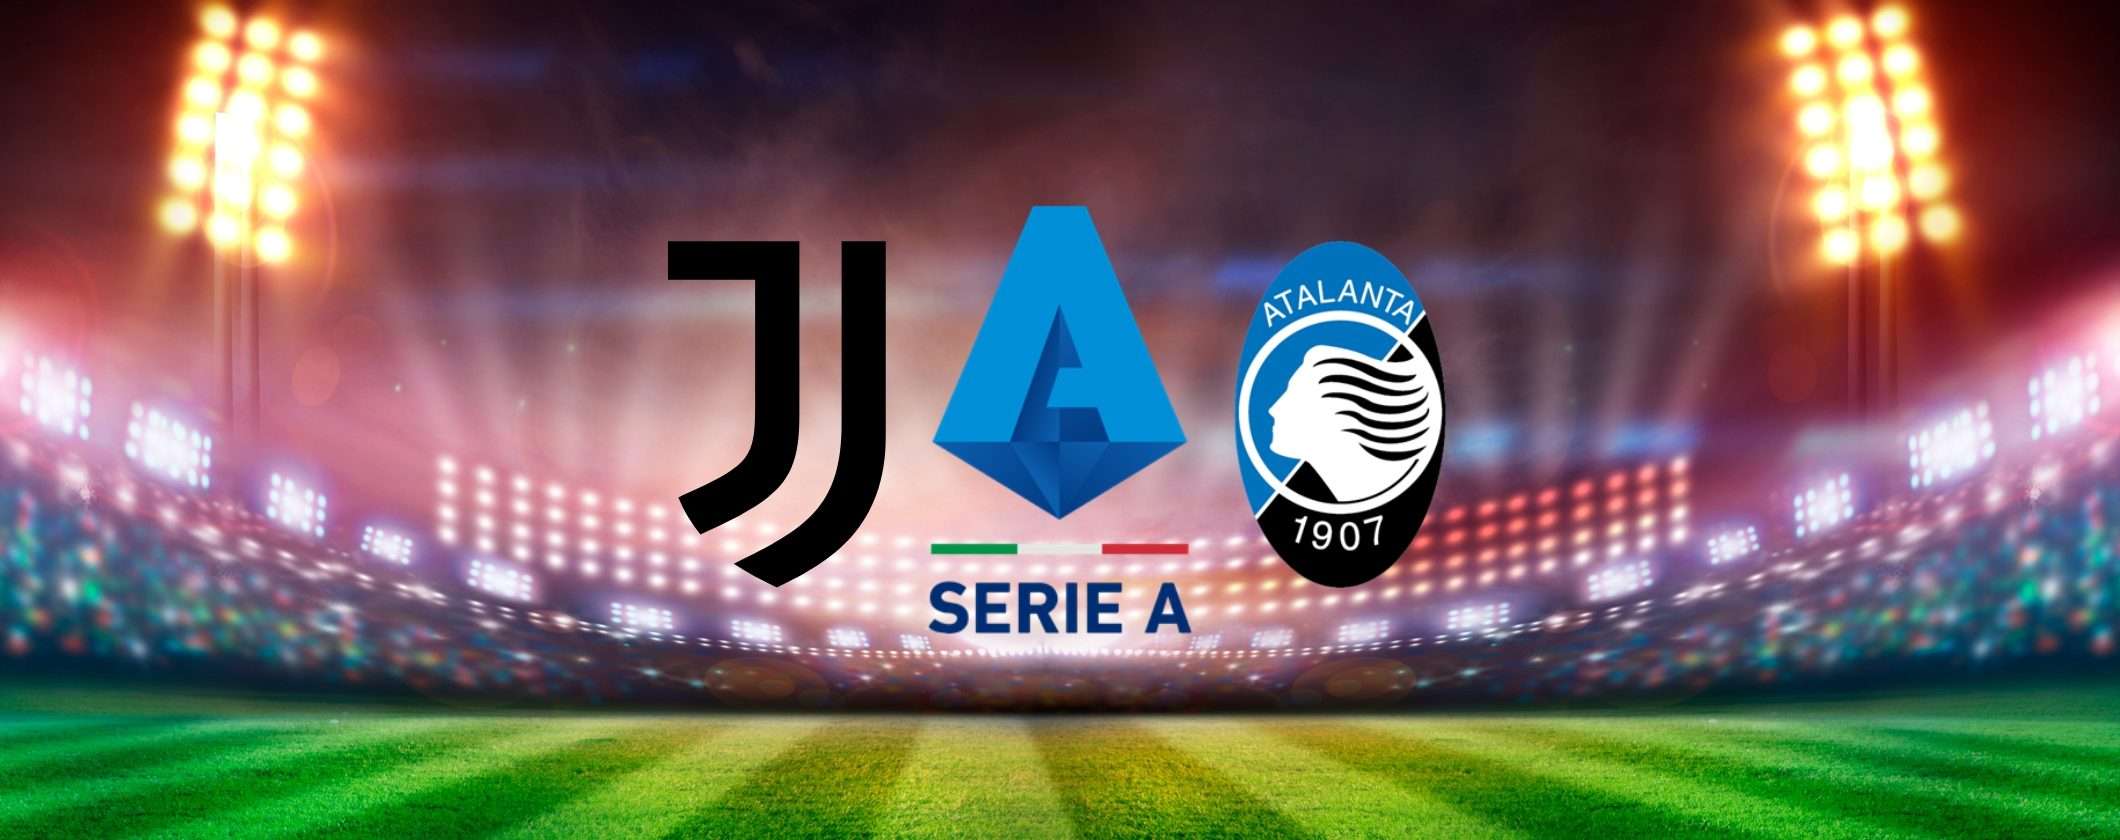 Come vedere Juventus-Atalanta in streaming dall'estero